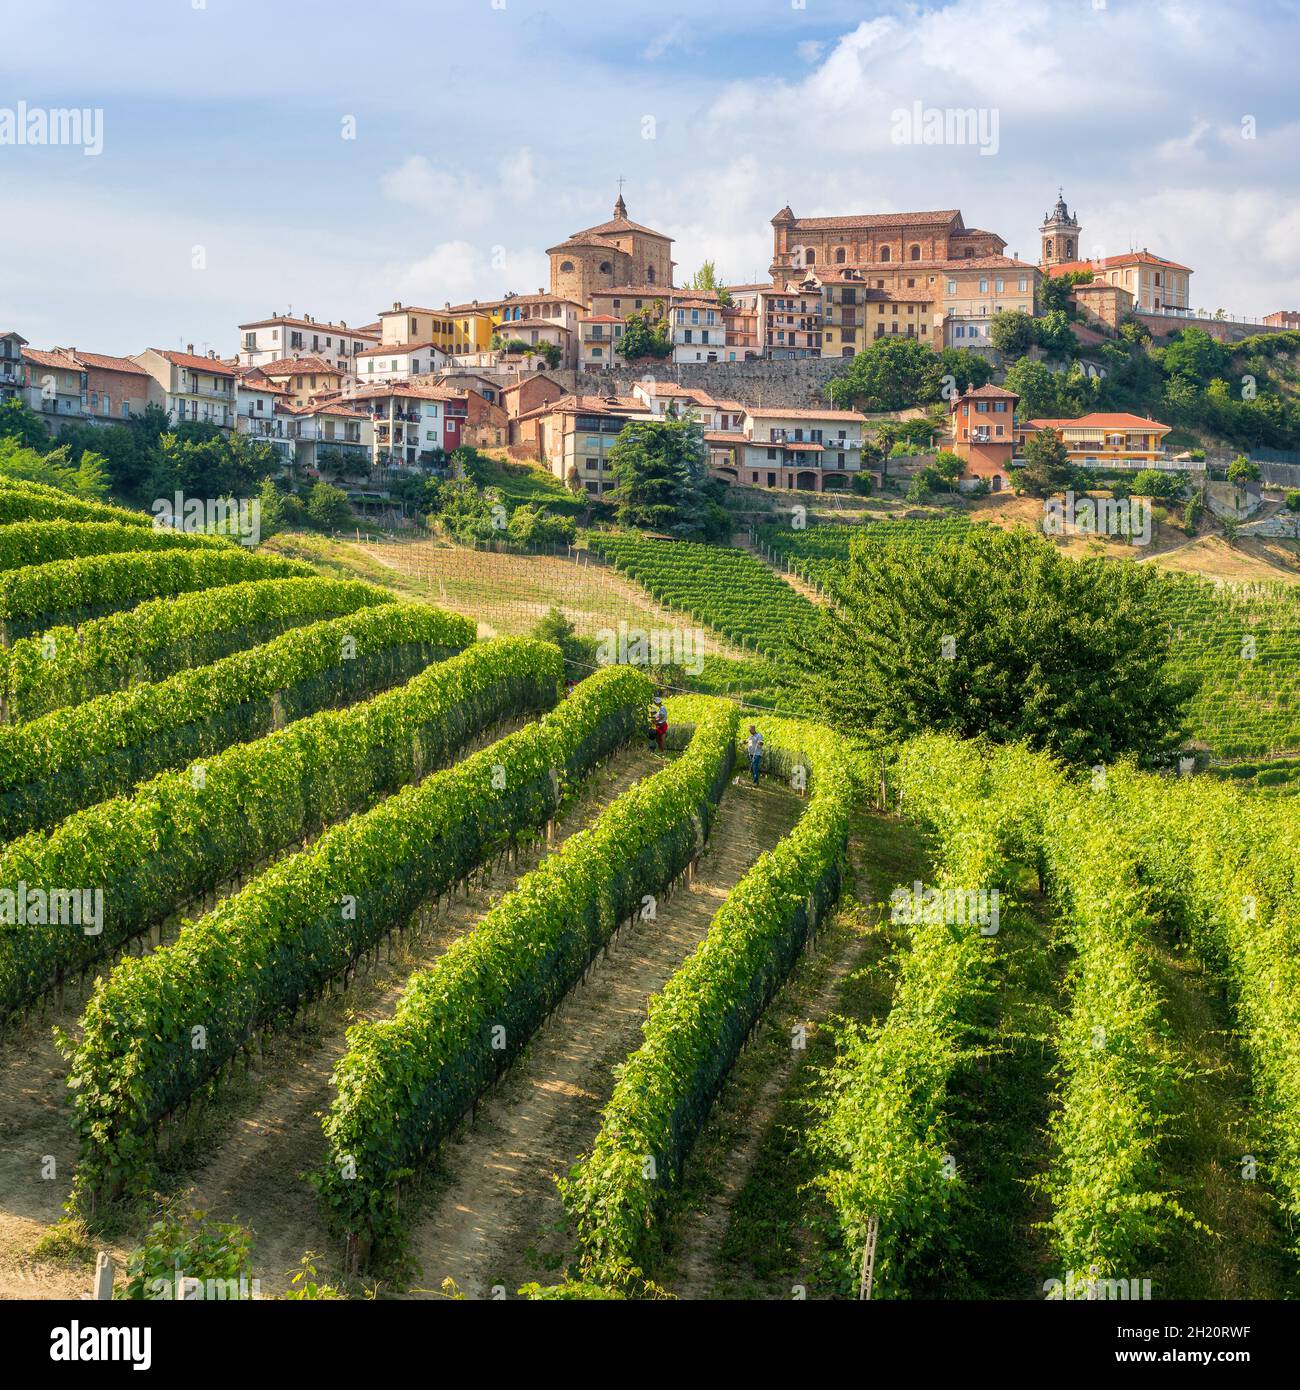 Das schöne Dorf La Morra und seine Weinberge in der Region Langhe im  Piemont, Italien Stockfotografie - Alamy